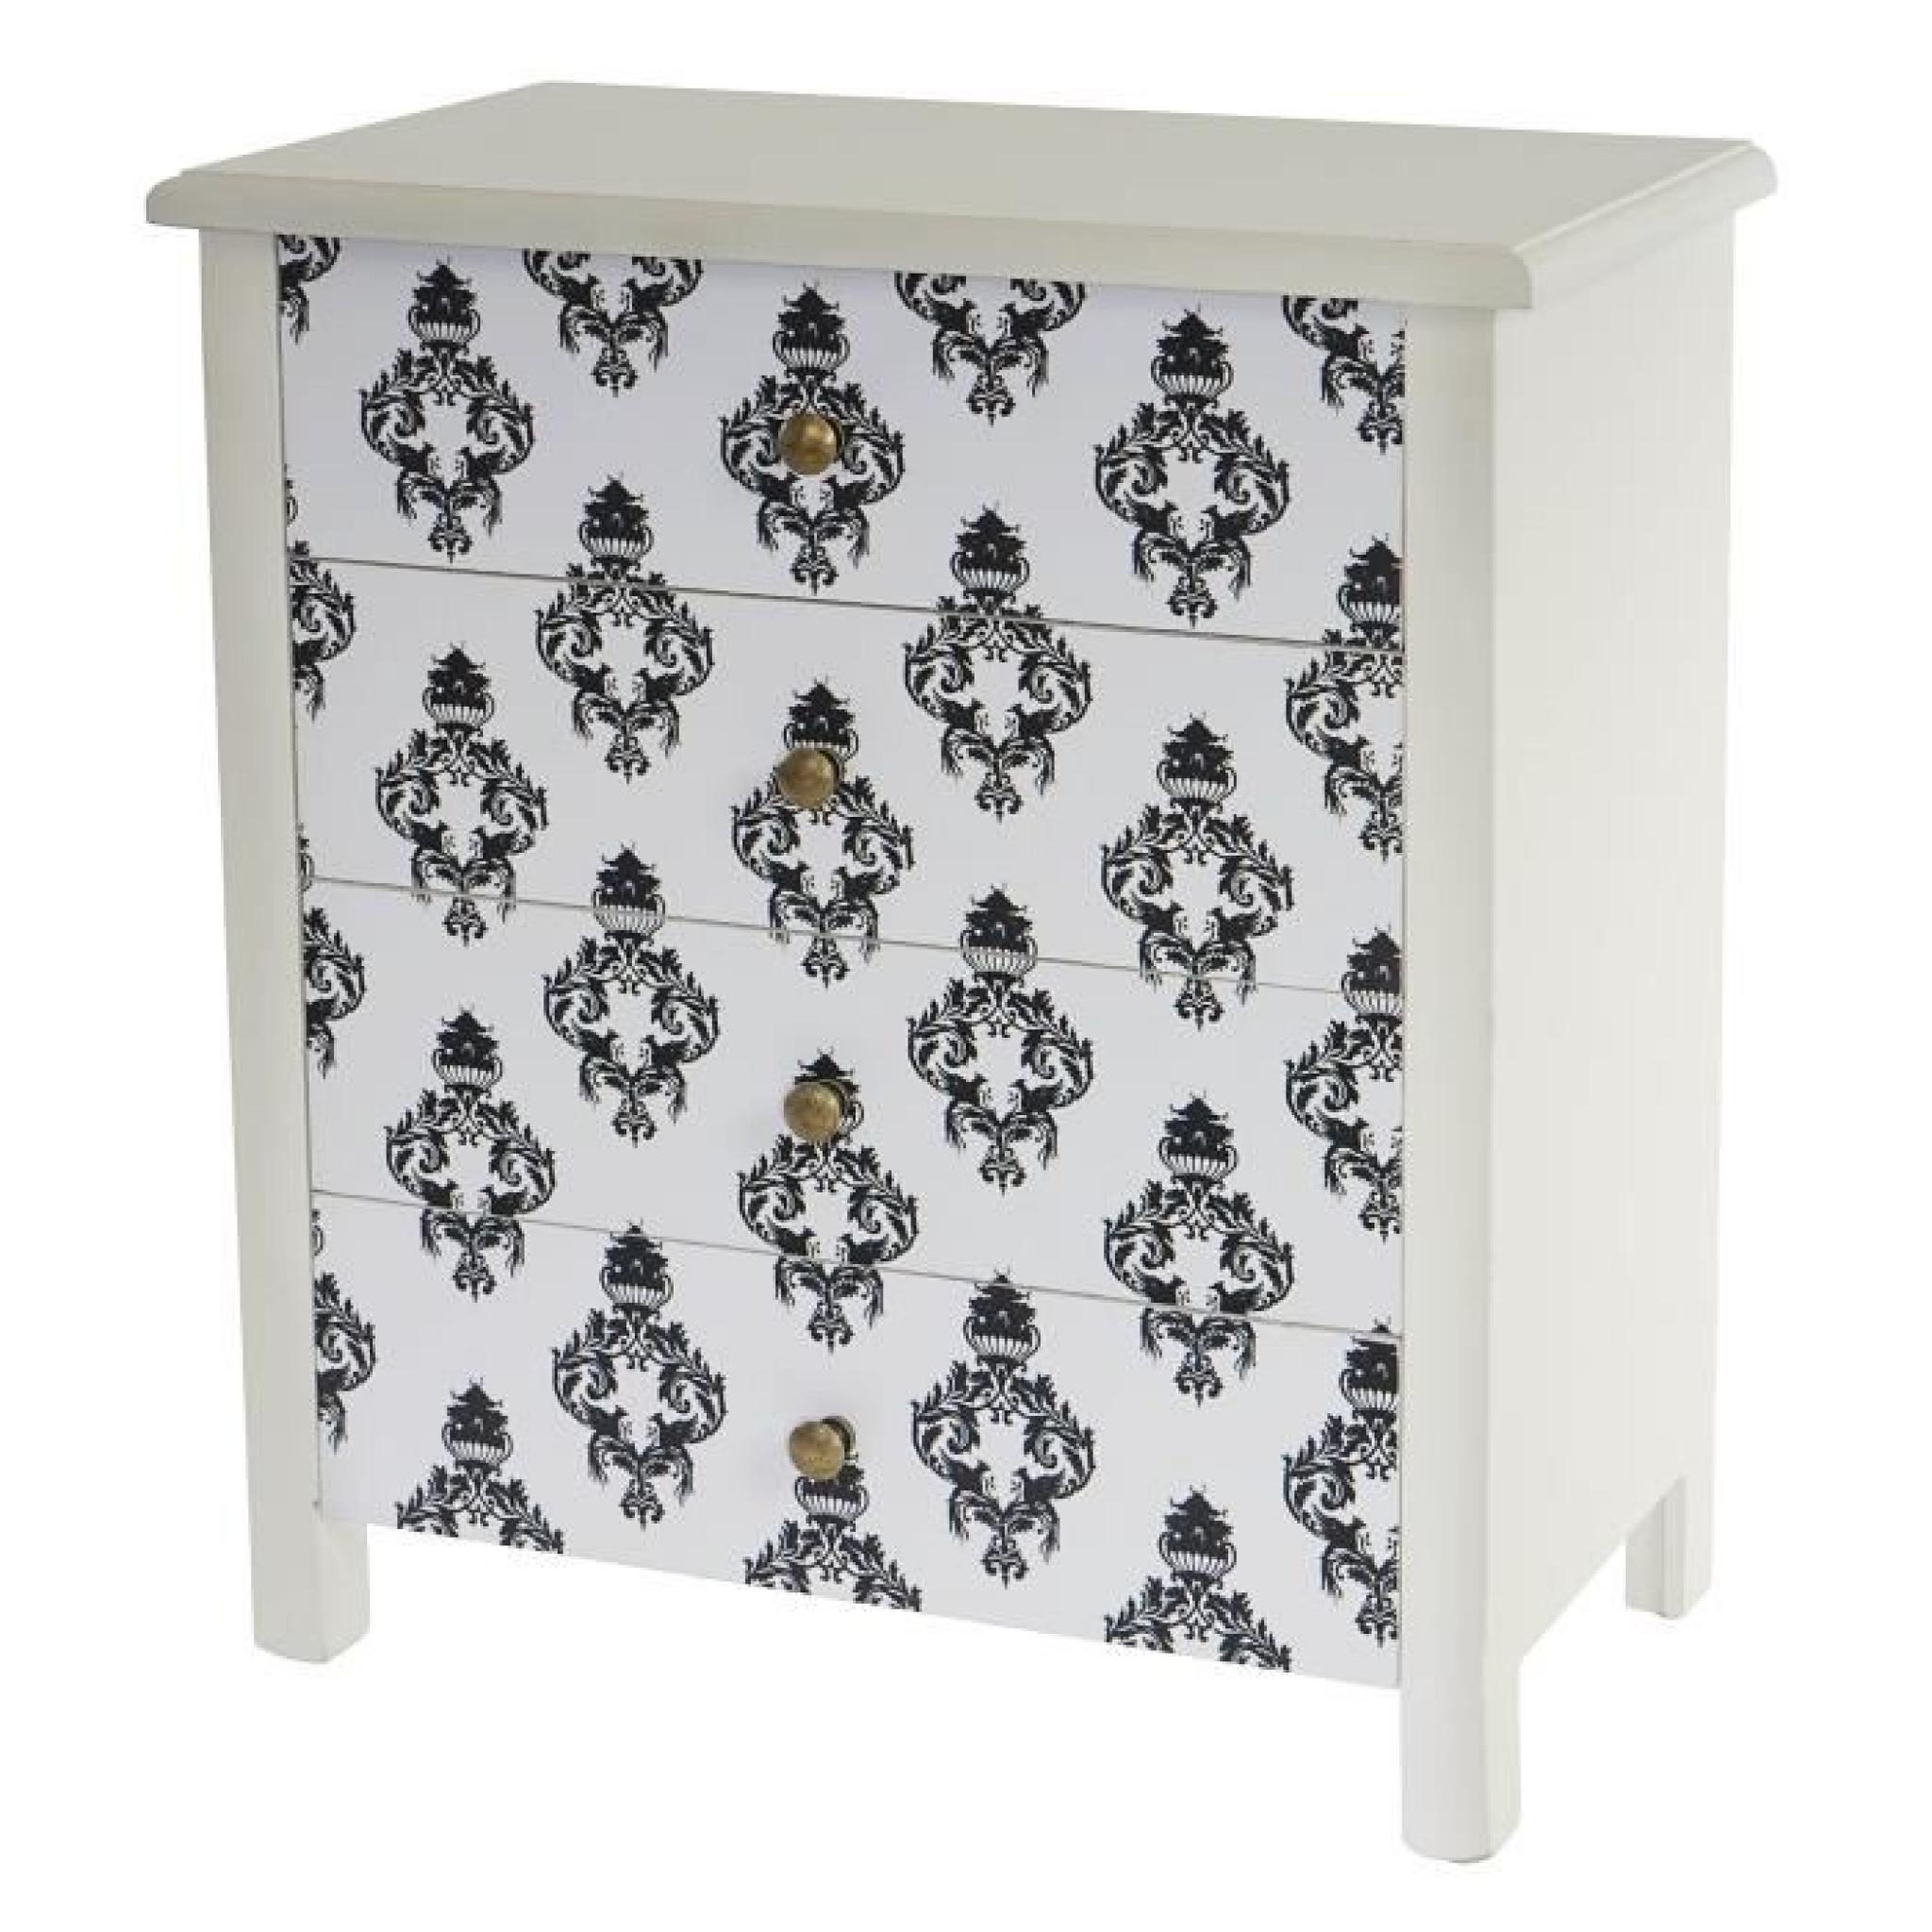 Commode Luton armoire table d'appoint chevet,66x60x33cm, motif orchidée.